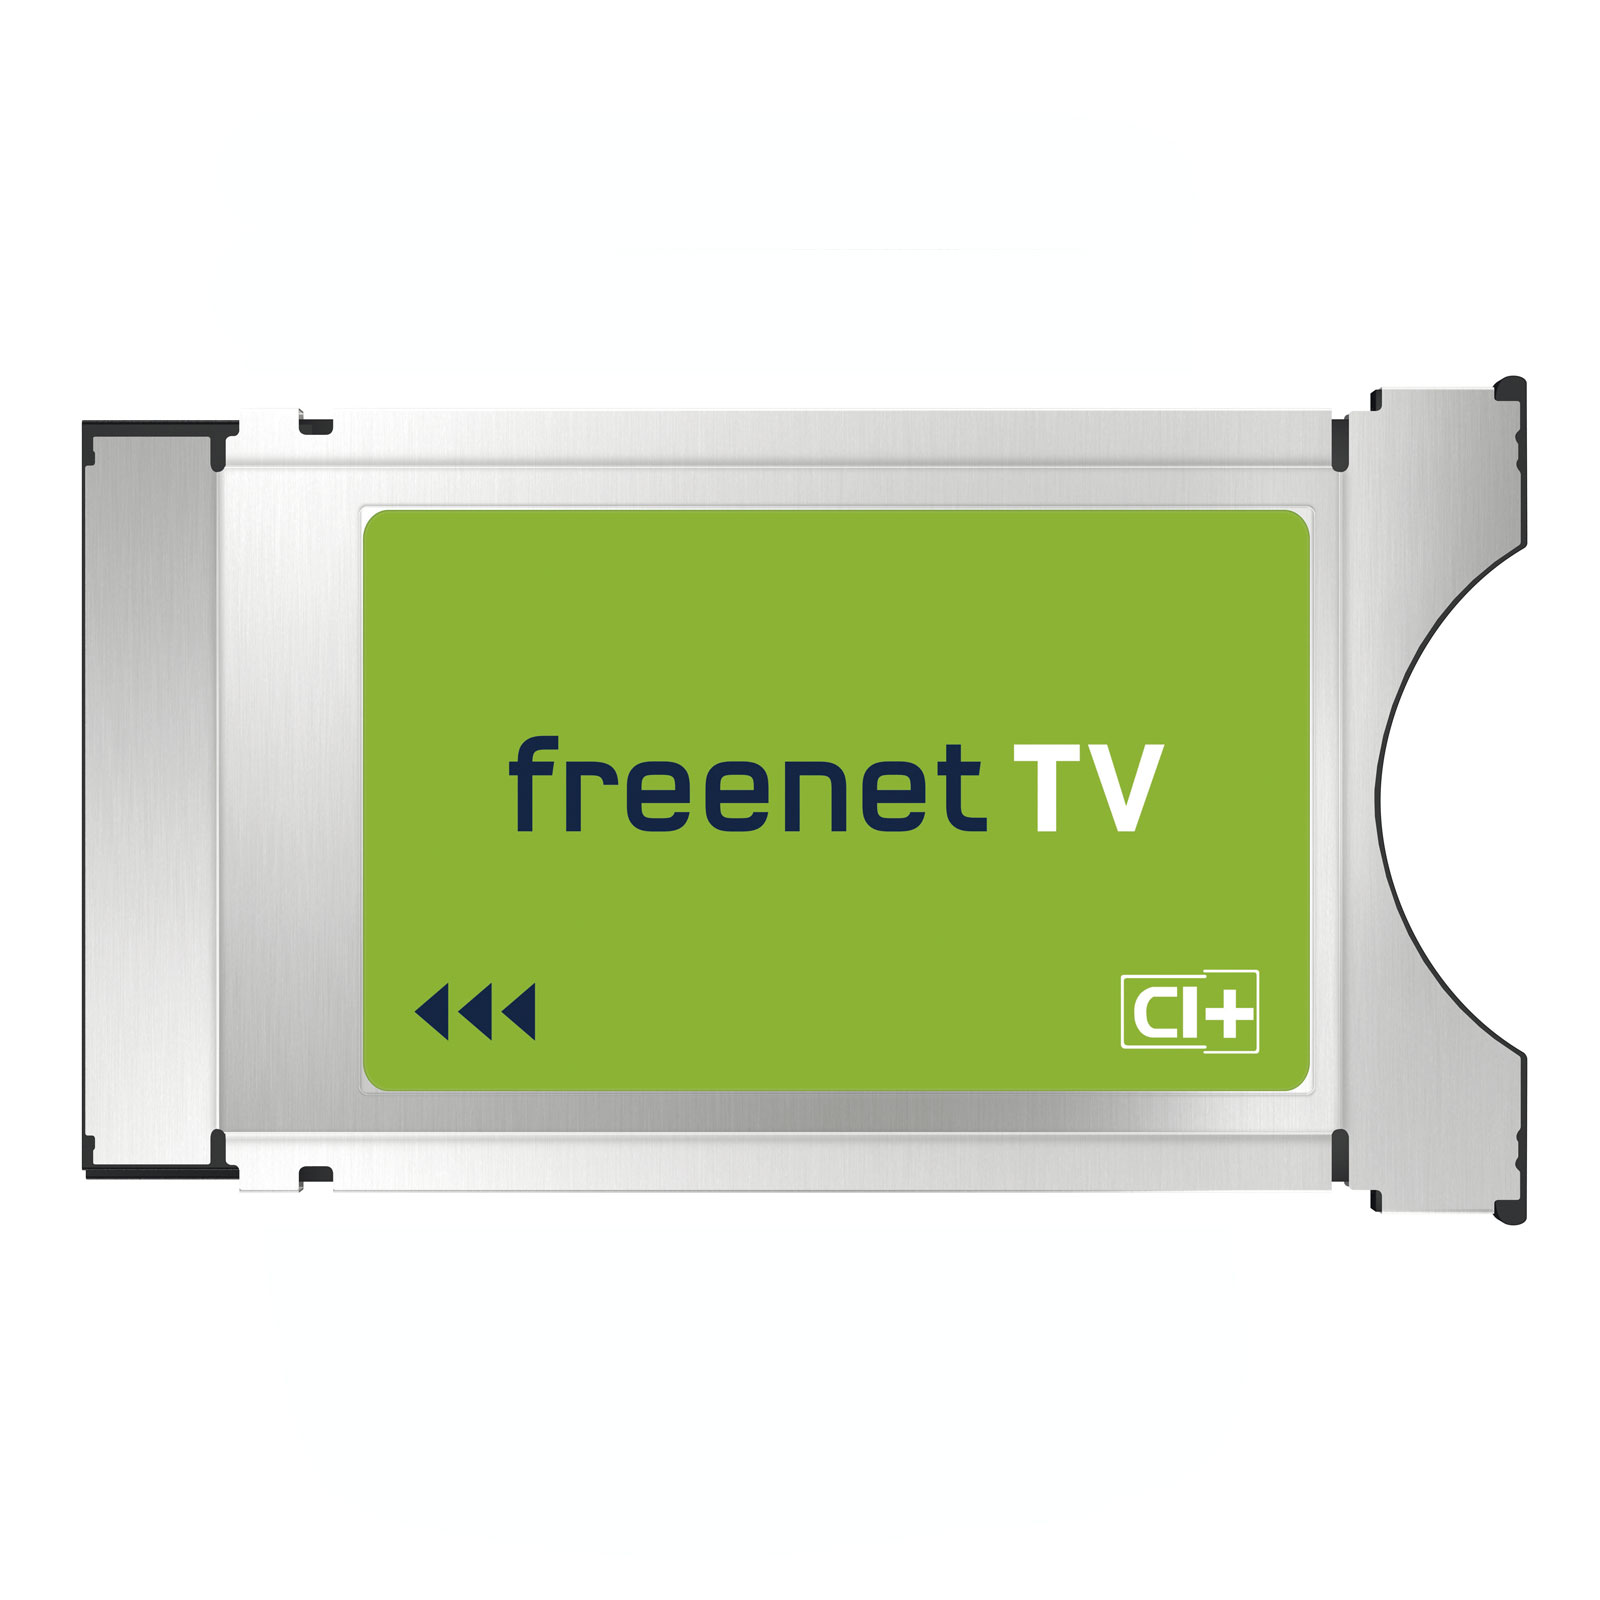 freenet TV CI+ Modul für Antenne und Satellit mit 3 Monaten freenet TV gratis